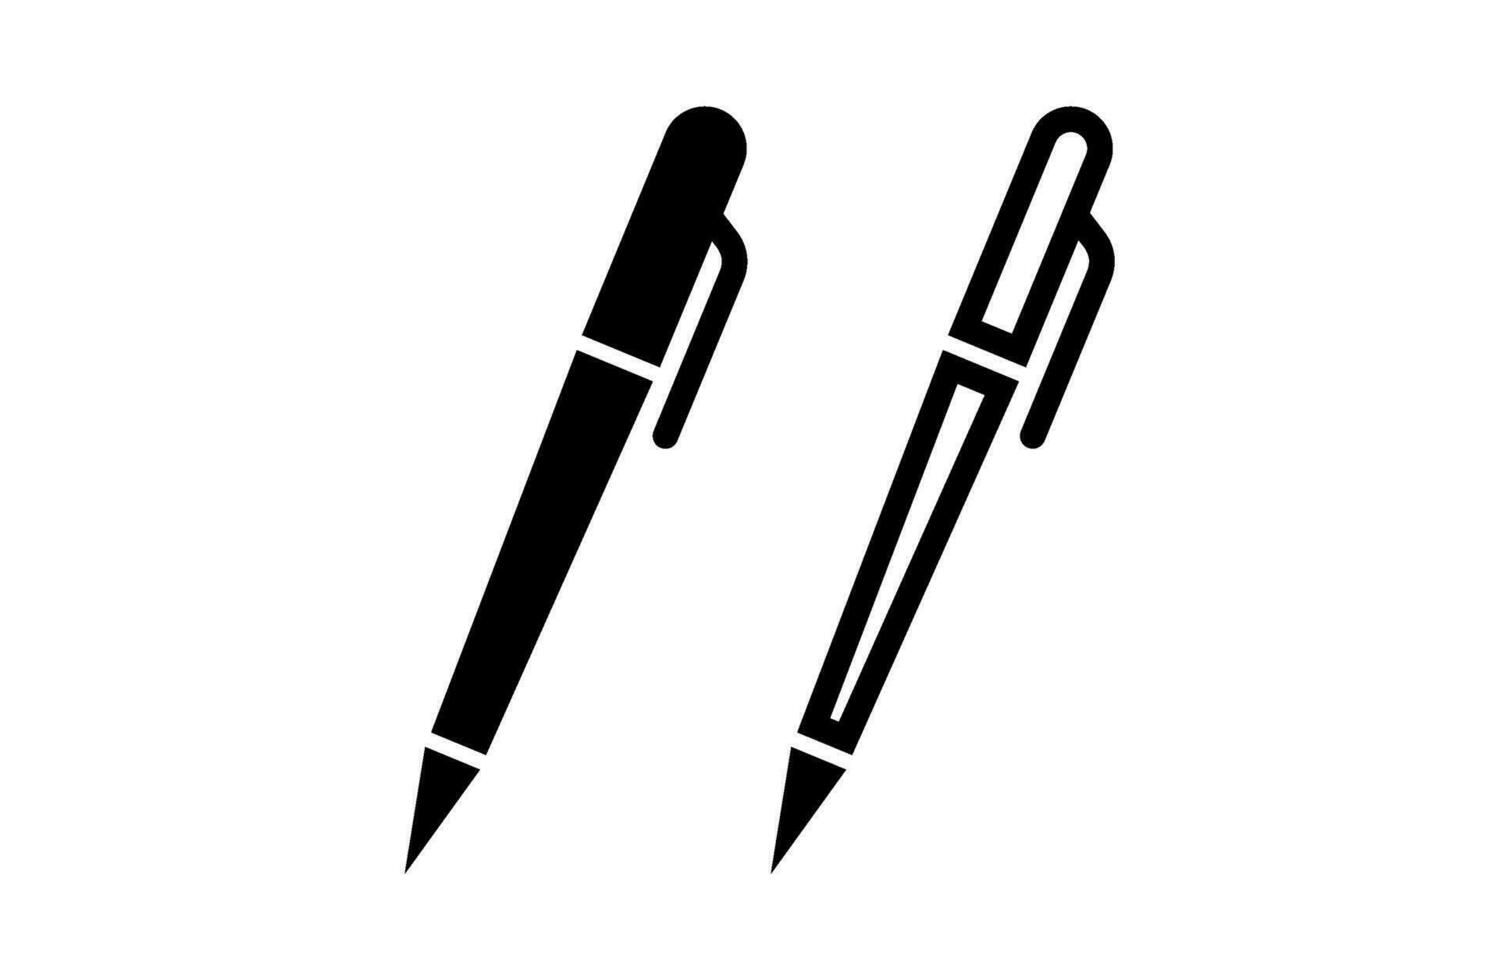 penne per scrittura e ufficio forniture 35762910 Arte vettoriale a Vecteezy